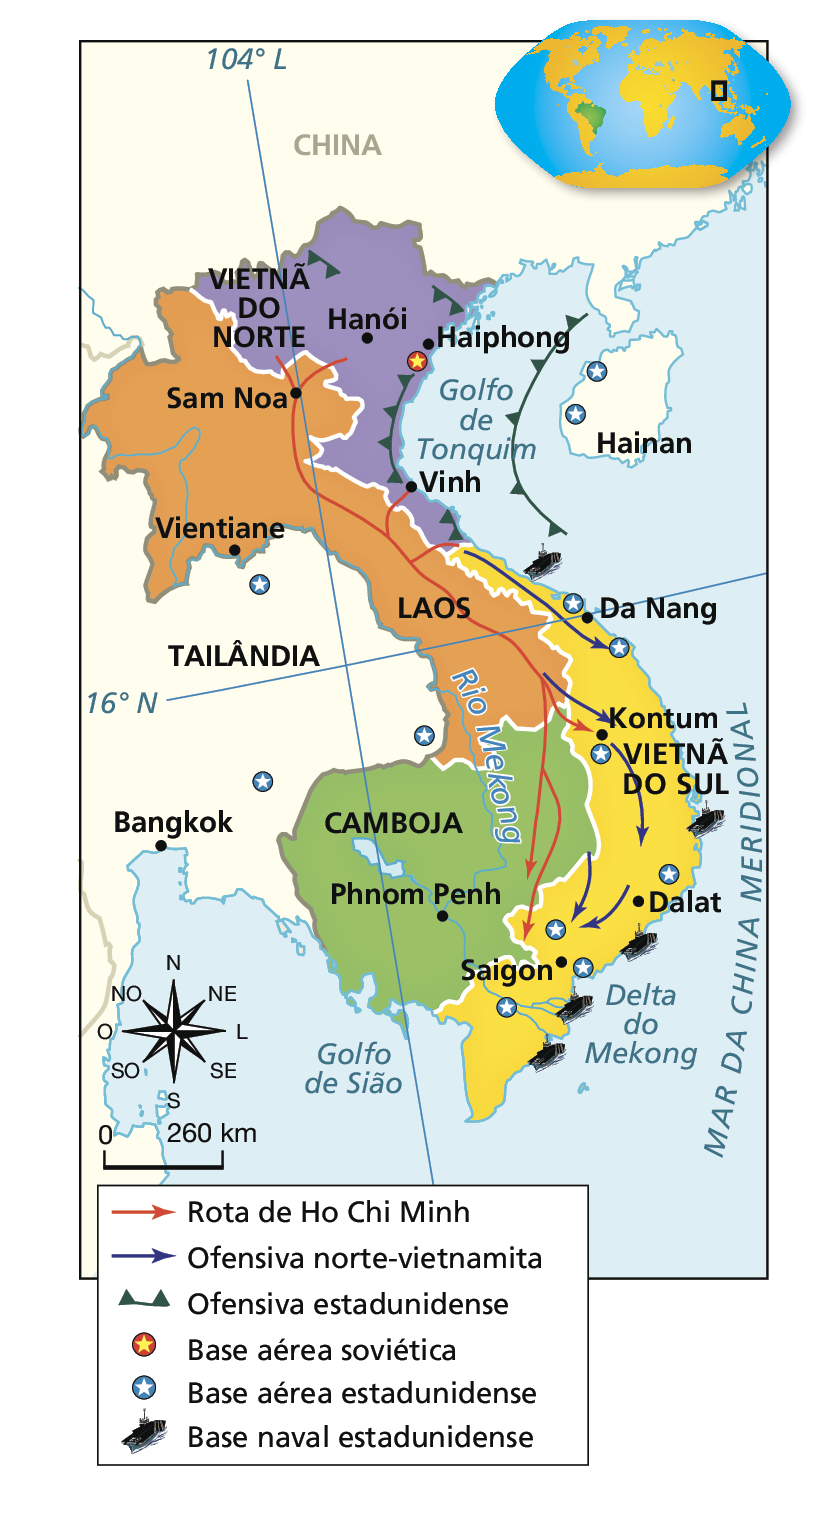 Mapa. Guerra do Vietnã, de 1955 a 1975. Destaque para o Sudeste Asiático. Mapa com destaque para quatro países: Laos, em laranja; Camboja, em verde, Vietnã do Norte, em roxo, e Vietnã do Sul, em amarelo. Legenda: Seta vermelha: Rota de Ho Chi Minh. Seta lilás: Ofensiva norte-vietnamita. Linha verde com triângulos: Ofensiva estadunidense. Círculo vermelho com estrela amarela: Base aérea soviética. Círculo azul com estrela vermelha: Base aérea estadunidense. Ícone de navio: Base naval estadunidense. No mapa. Rota de Ho Chi Minh: sai do norte do Vietnã do Norte, próximo da cidade de Hanói, e passa por Sam Noa, no Laos. Segue em direção ao ao sul e entra novamente em território norte-vietnamita, em direção à cidade de Minh, no Vietnã do Norte, e à fronteira entre Vietnã do Norte e Vietnã do Sul. Segue em direção a Kontumo, no Vietnã do Sul, e entra no Camboja em direção a Saigon, no Vietnã do Sul. Ofensiva norte-vietnamita: sai da fronteira entre Vietnã do Norte e Vietnã do Sul e segue em direção a Da Nang, no Vietnã do Sul. Outra sai da região sul do Laos em direção a Kontum, no Vietnã do Sul, e daí seguem para Dalat e para Saigon, no Vietnã do Sul. Ofensiva estadunidense: no norte e no litoral do Vietnã do Norte, na região do Golfo de Tonquim. Base aérea soviética: ao sul da cidade de Haiphong, no Vietnã do Norte. Base aérea estadunidense: duas na Ilha de Hainan, na China; três na Tailândia; e sete no Vietnã do Sul: uma ao norte de Da Nang; uma ao sul da mesma cidade; uma ao sul de Kontum; uma a nordeste de Dalat; uma a norte de Saigon, uma a leste e uma a sudoeste. Base naval estadunidense: uma no litoral norte do Vietnã do Sul; uma no litoral leste; uma no litoral sudeste, e duas no litoral sul, no delta do Rio Mekong. No canto inferior esquerdo, rosa dos ventos e escala de 0 de 260 quilômetros.